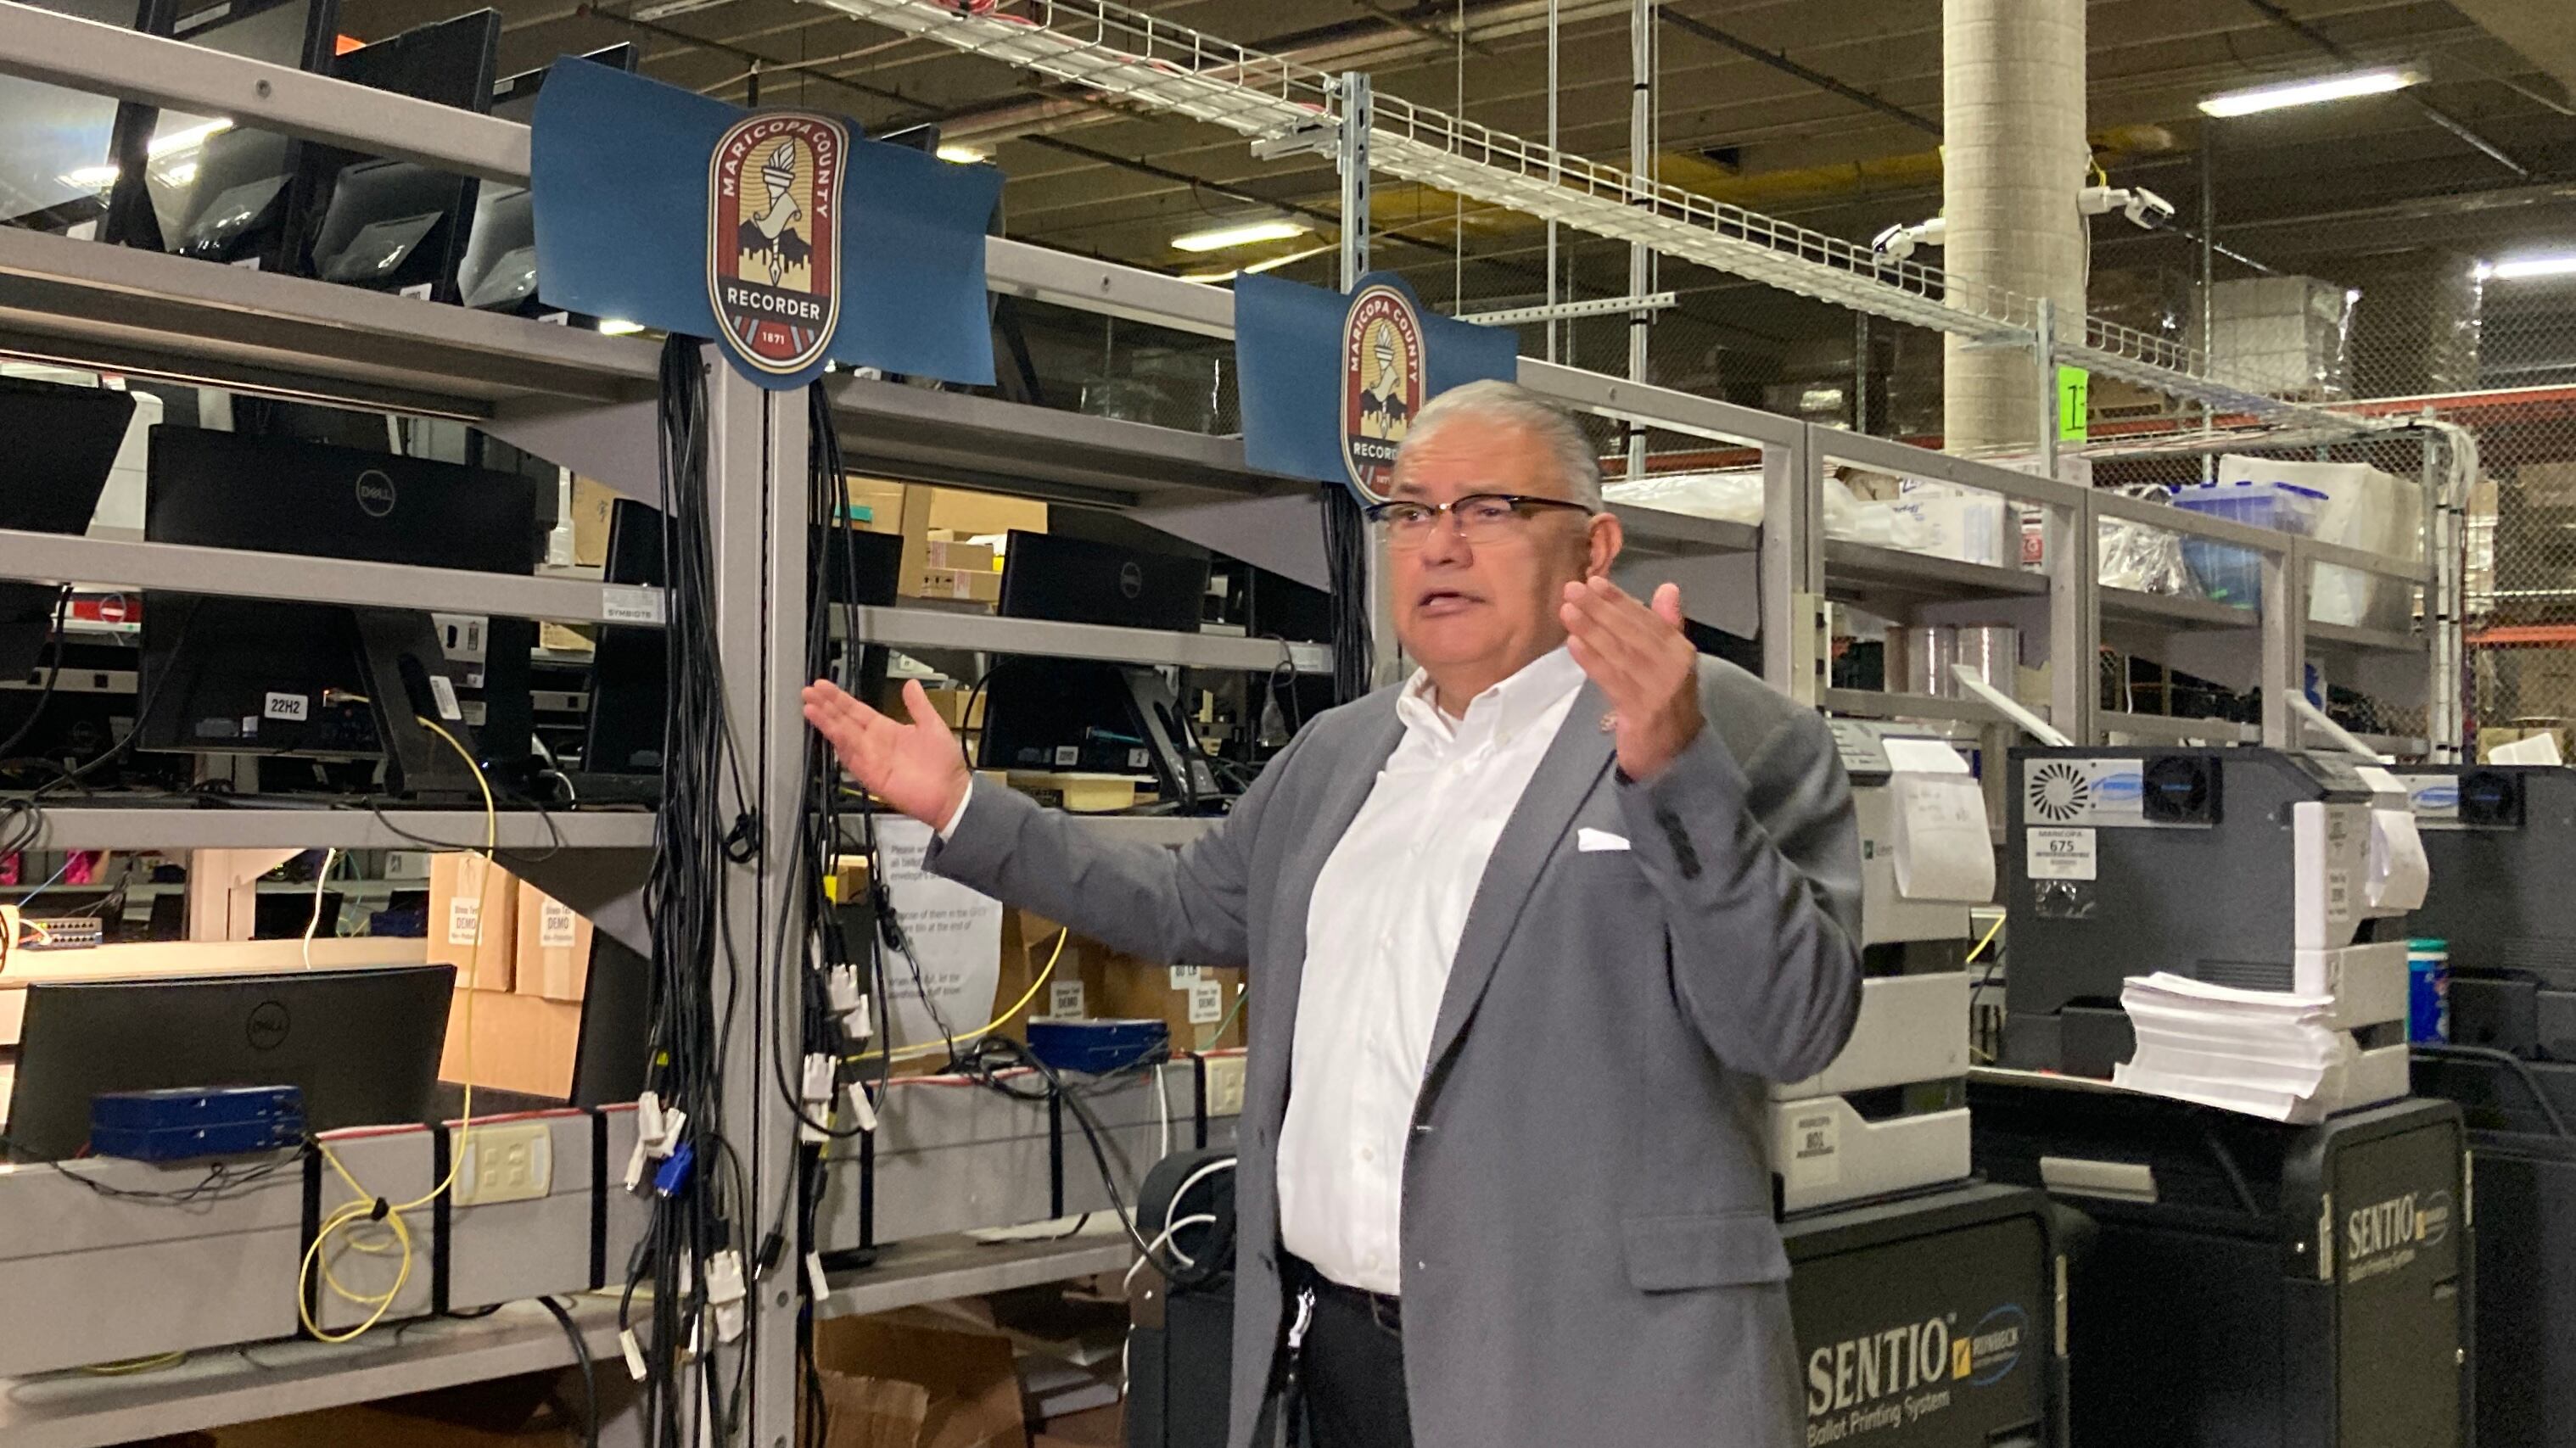 man in suit raises hands in warehouse